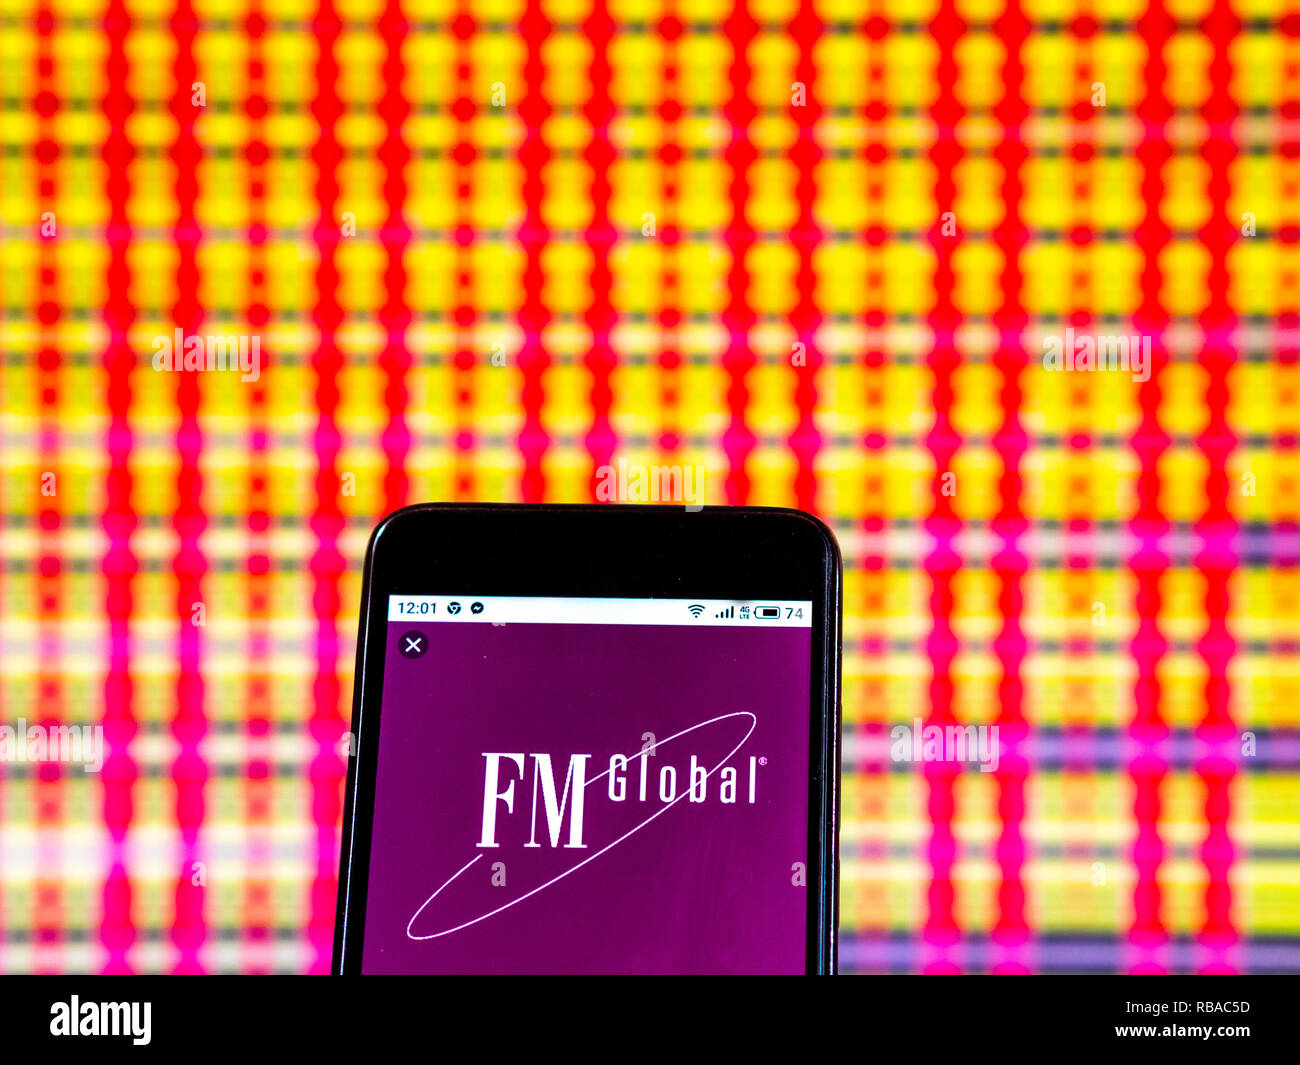 Fm global logo Banque de photographies et d'images à haute résolution -  Alamy